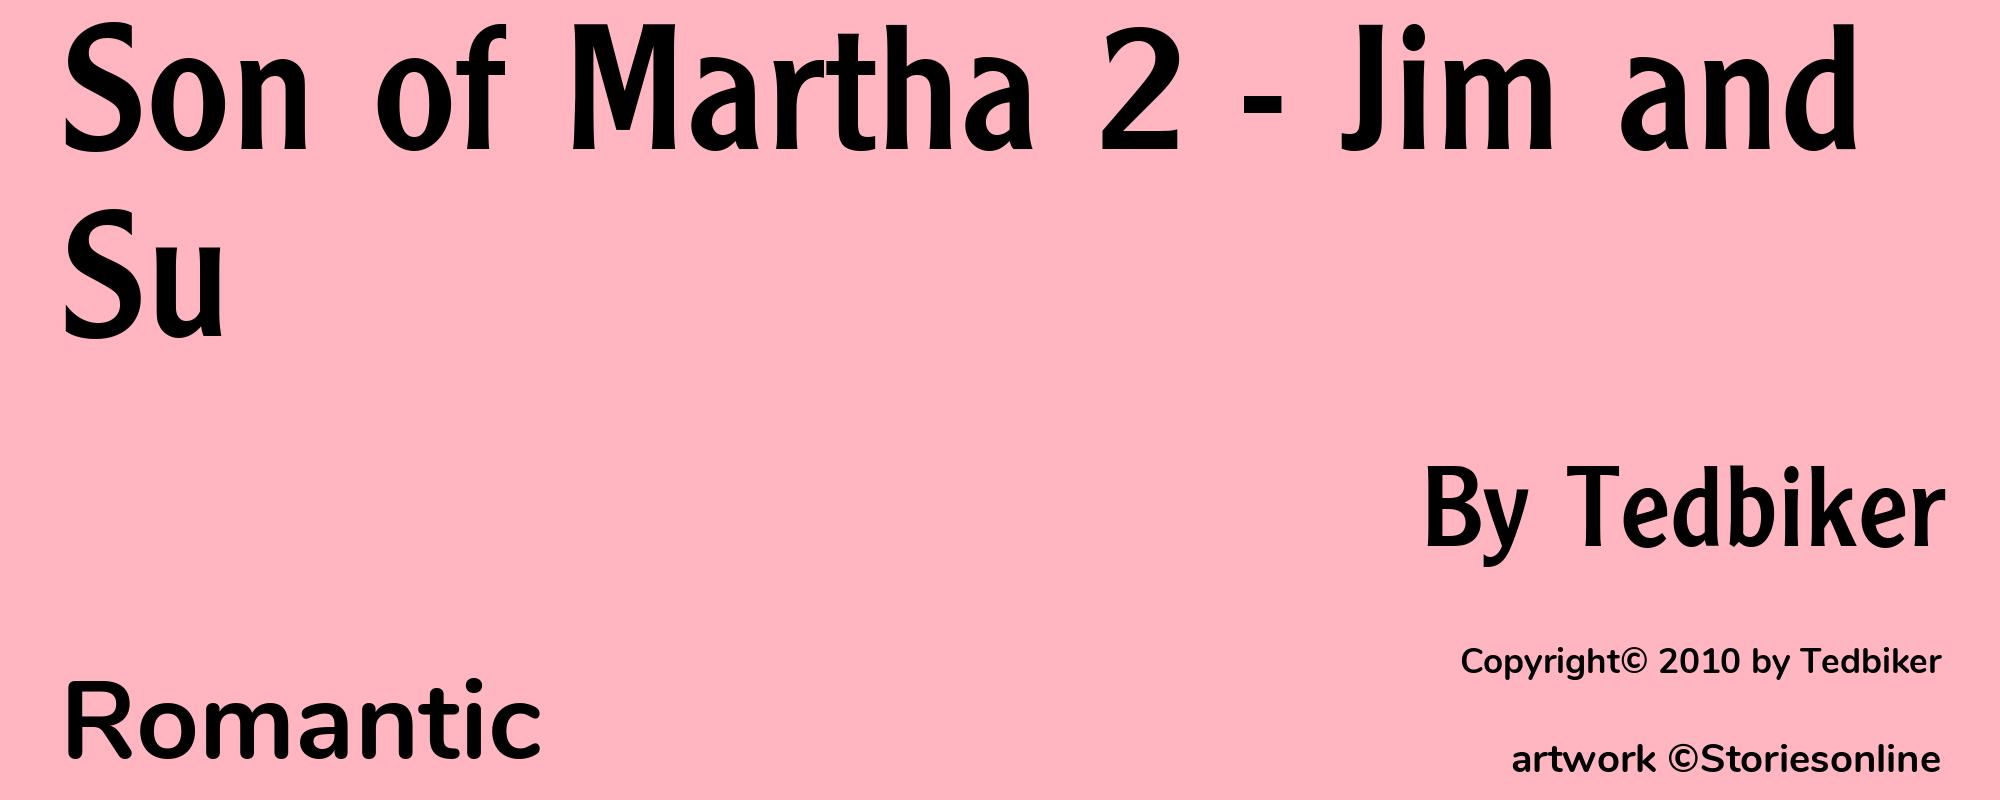 Son of Martha 2 - Jim and Su - Cover